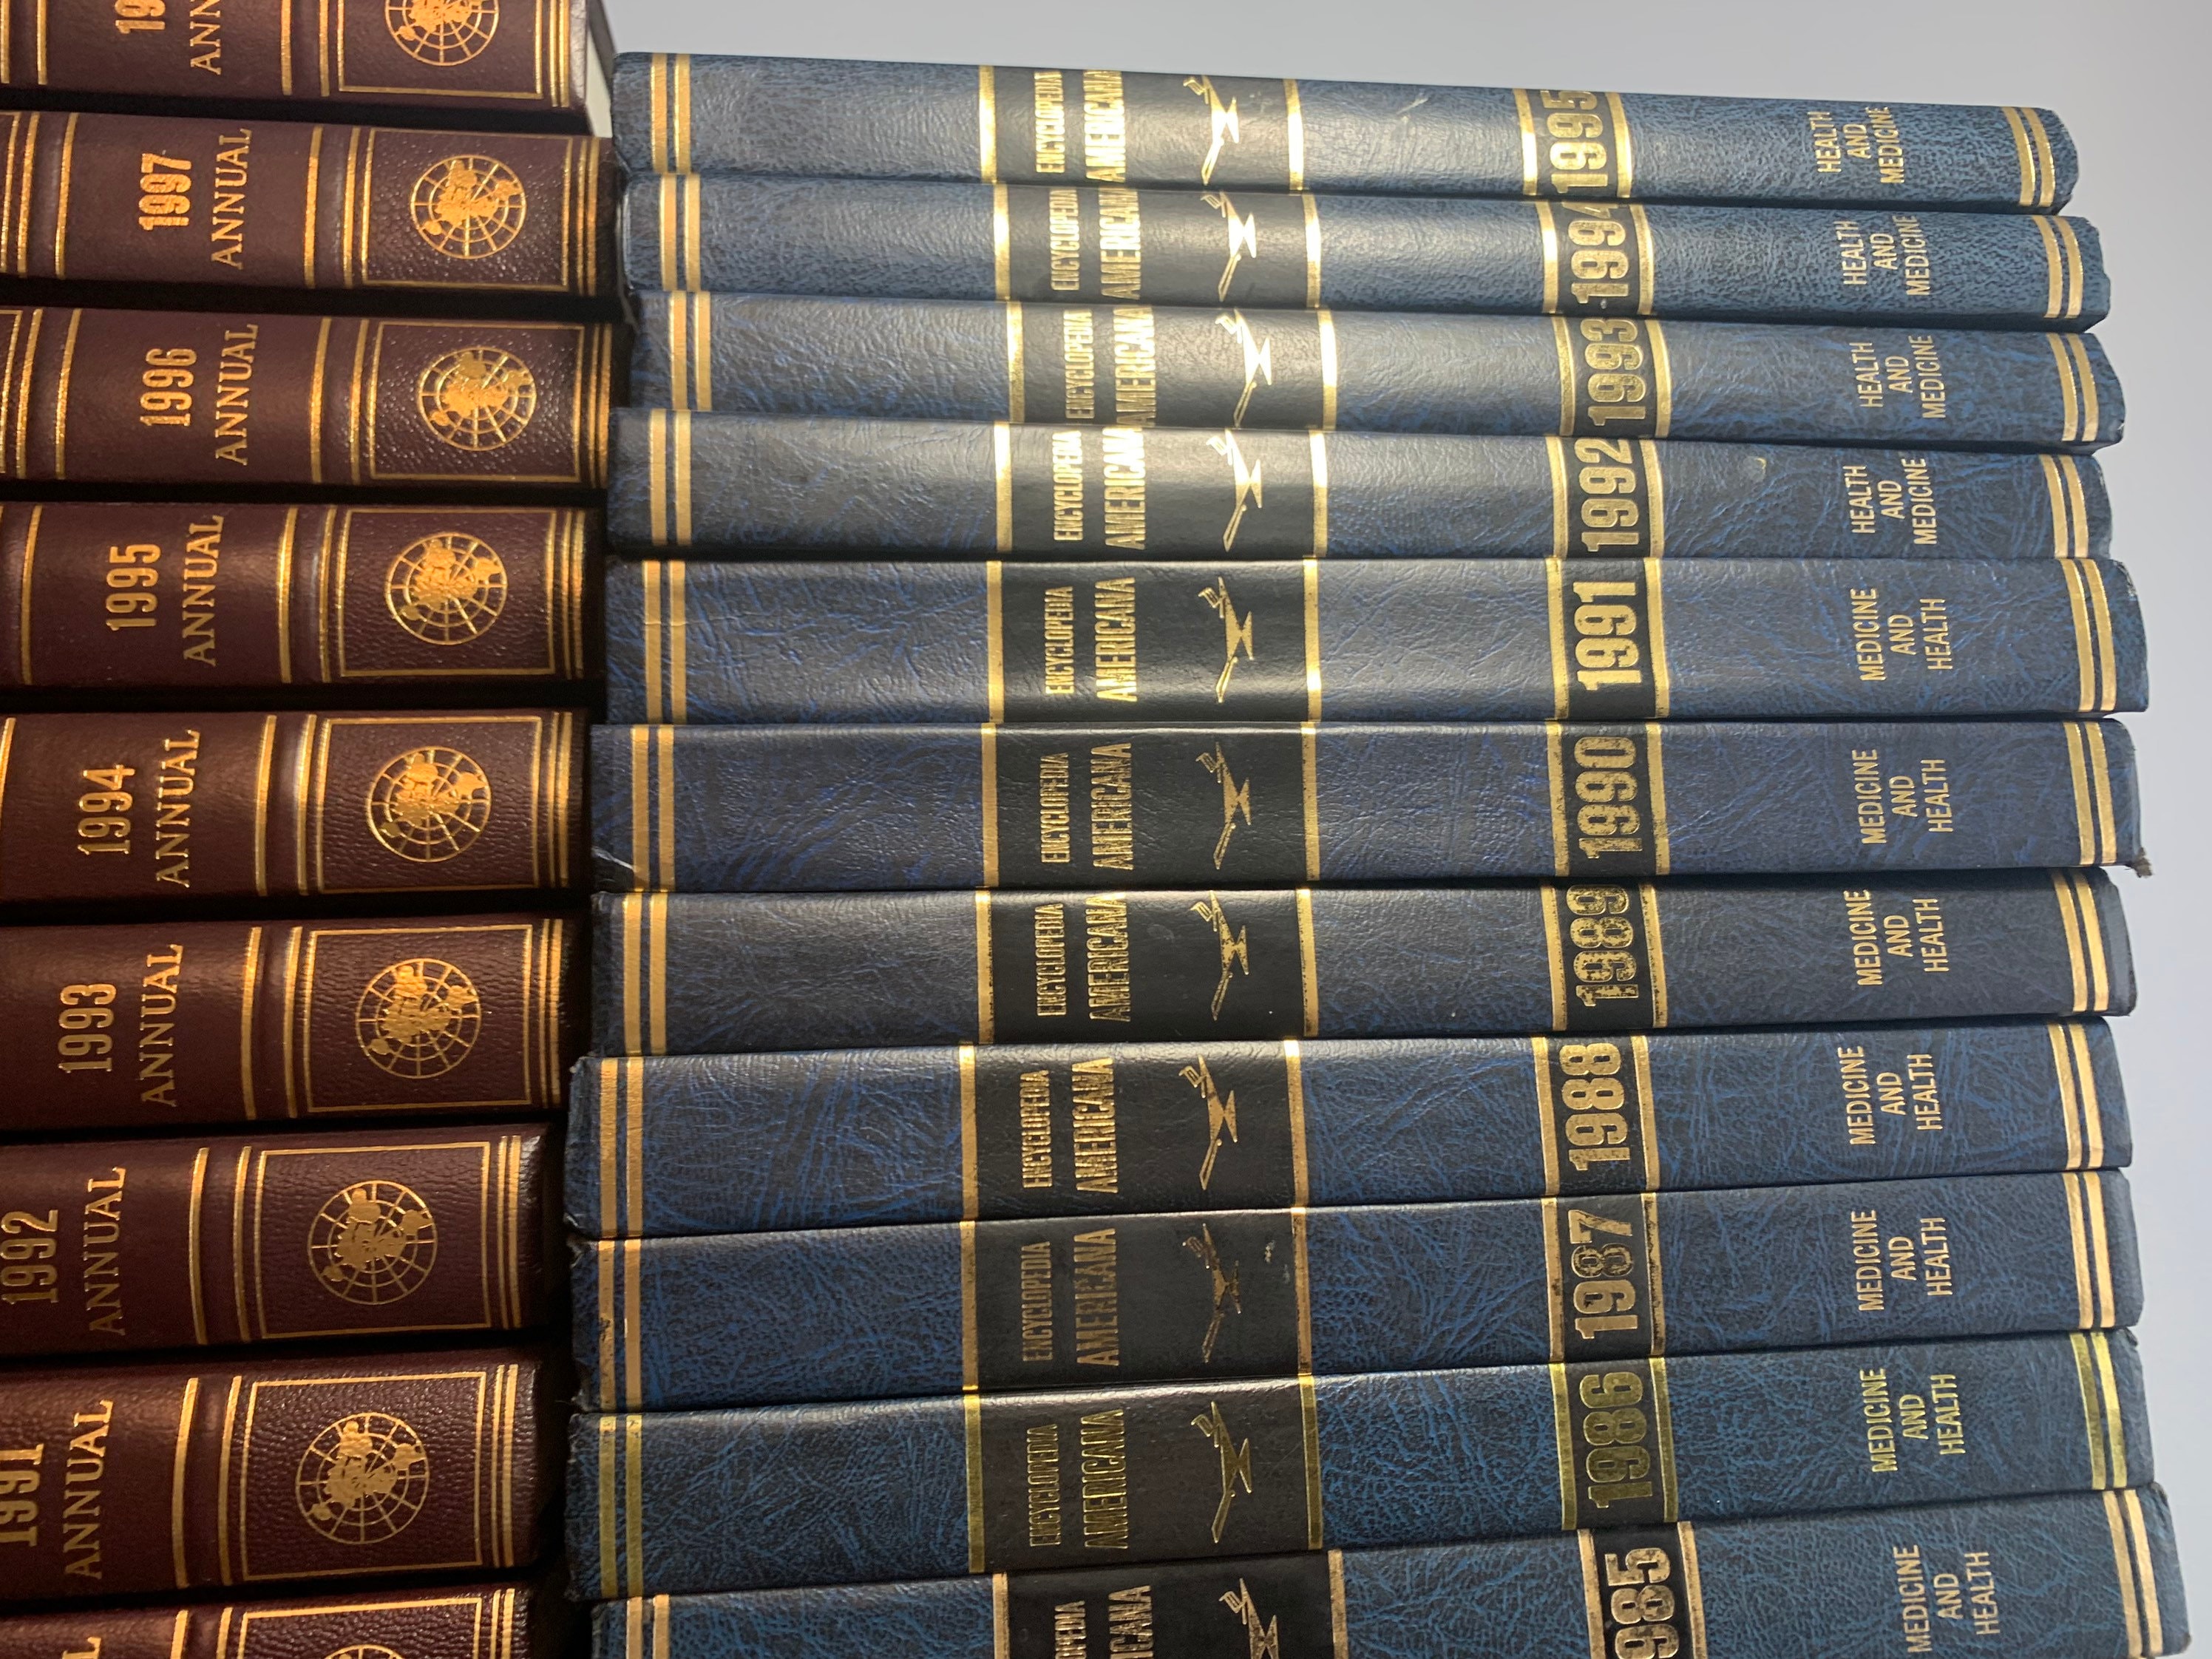 百科事典、エンサイクロペディア、アメリカーナのシリーズが30冊